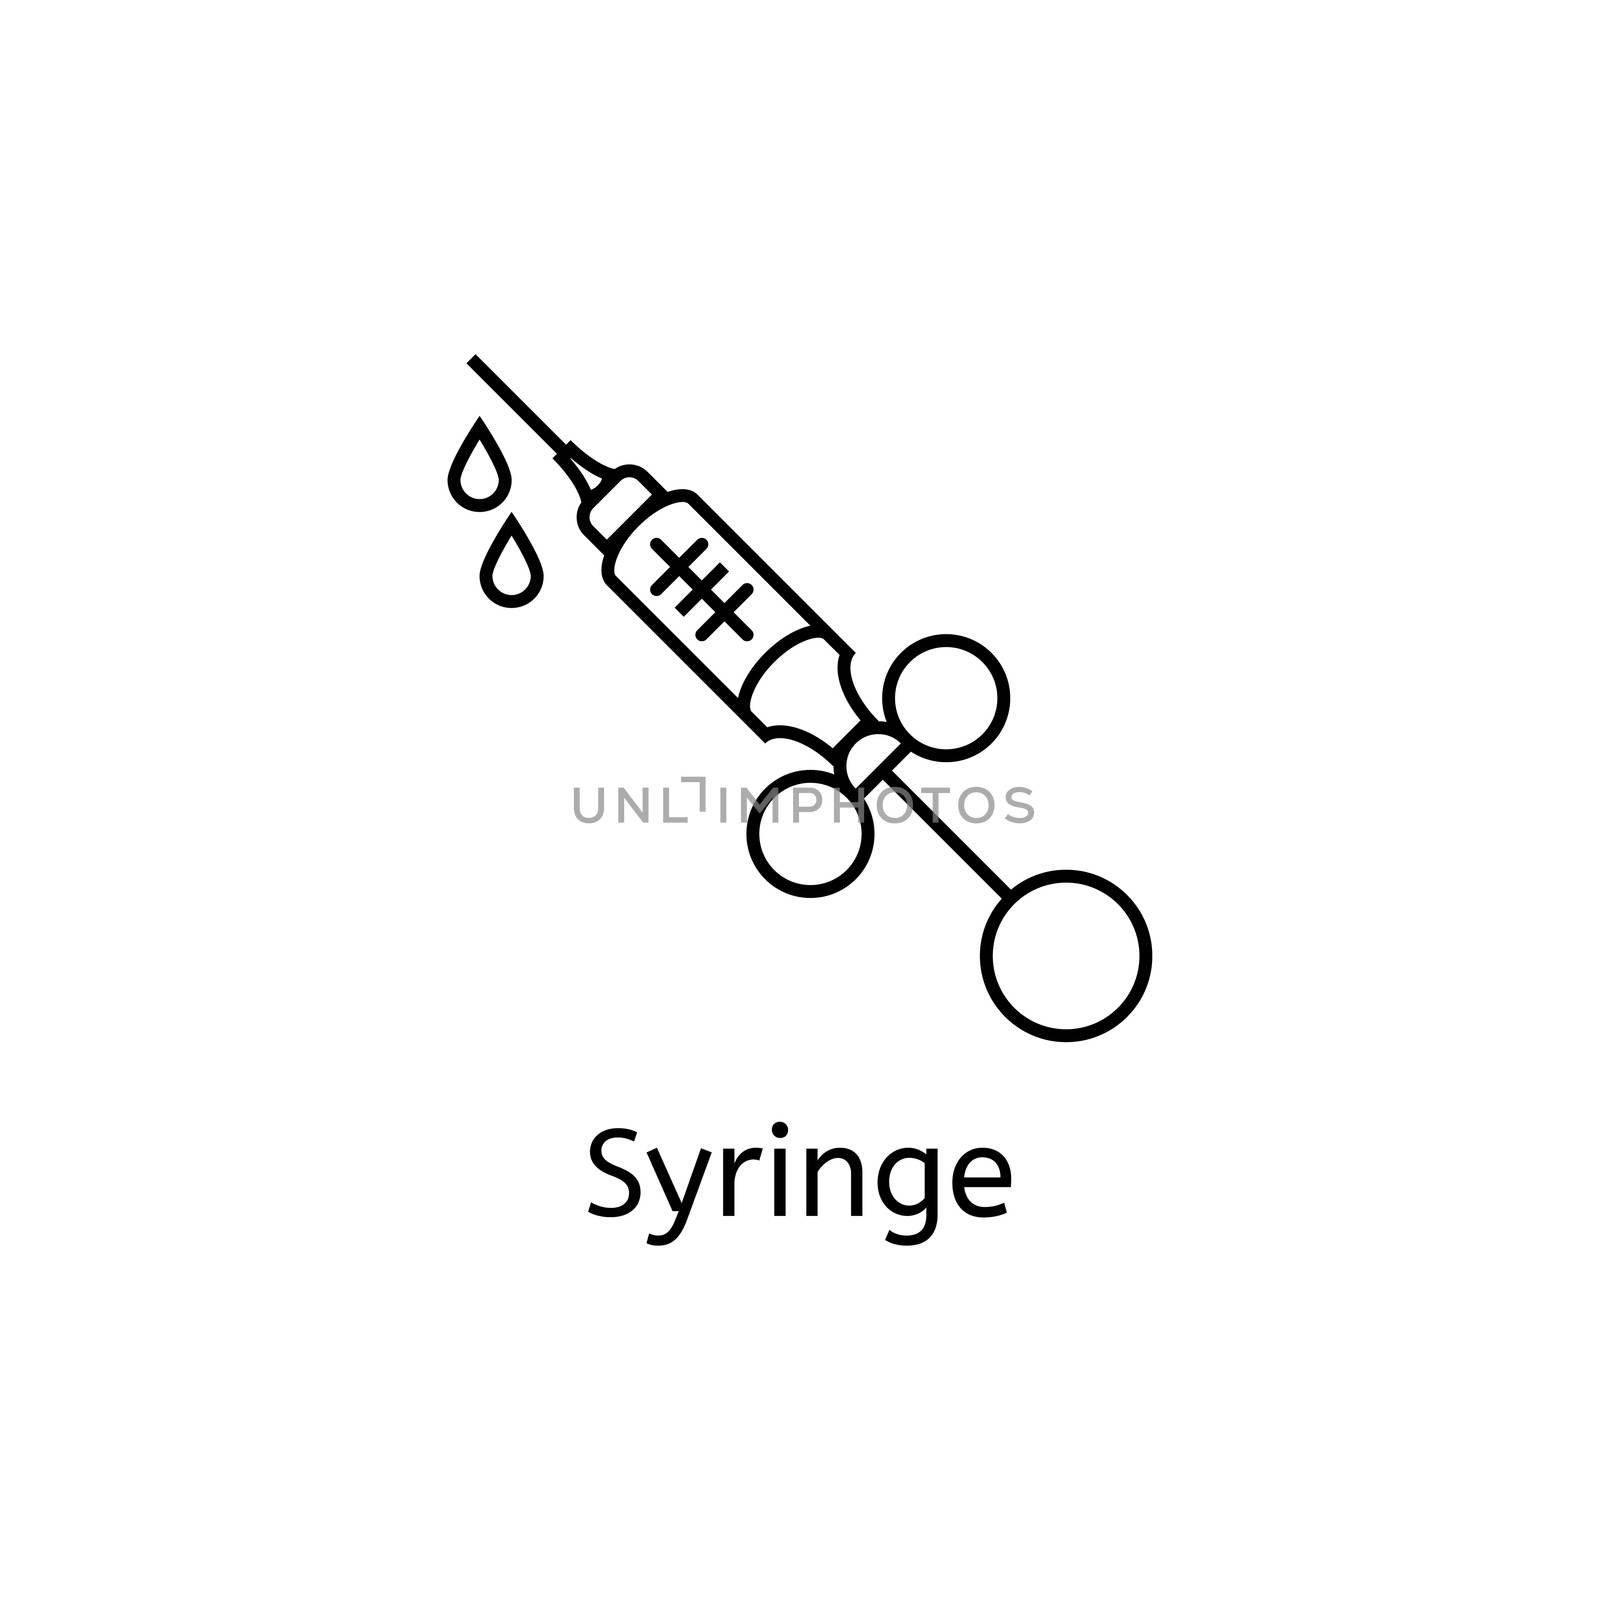 Syringe Icon isolated on white background. Thin line illustration.